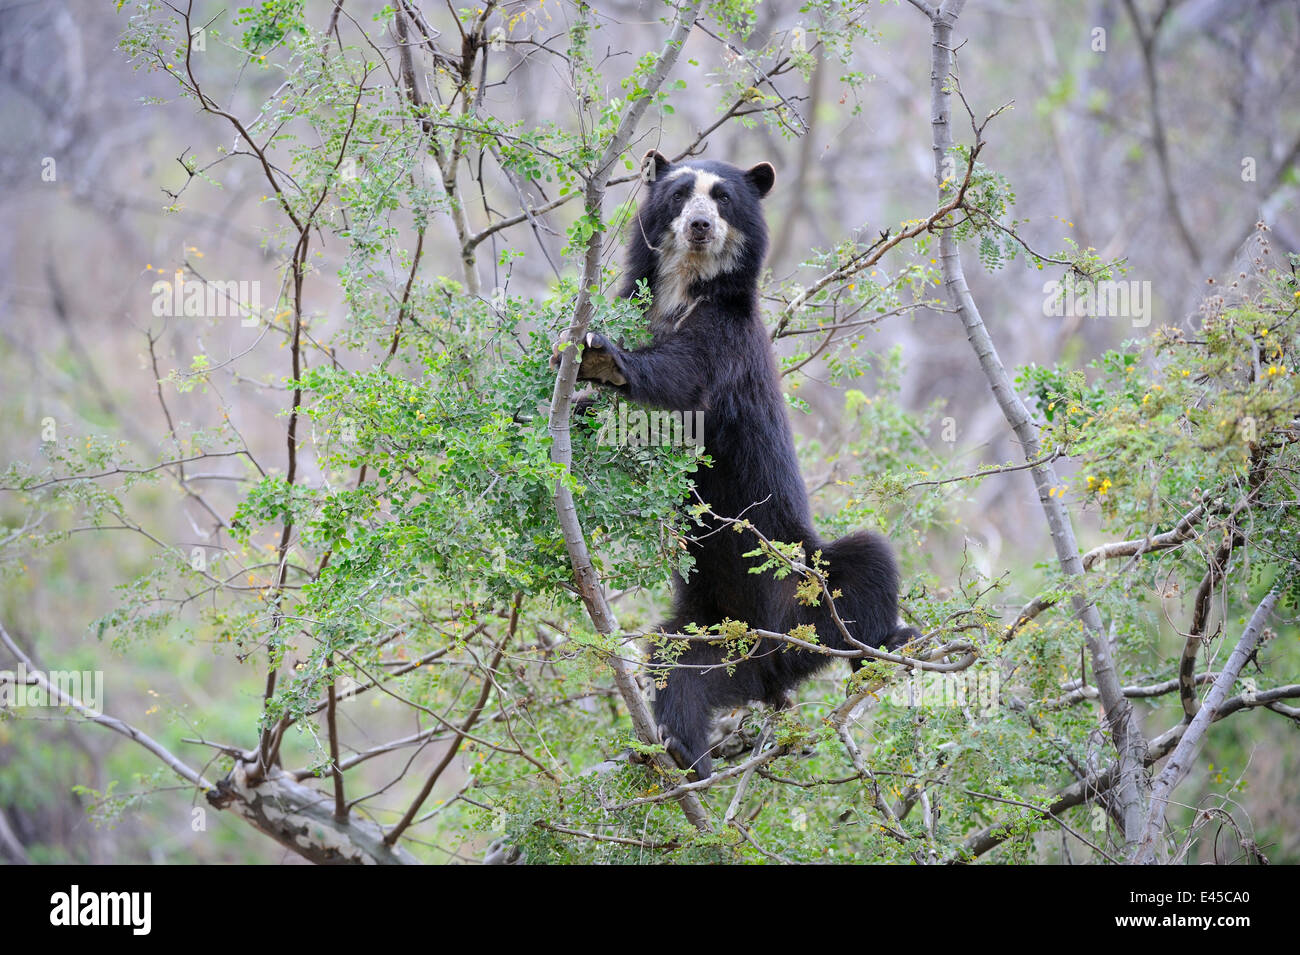 Ours à lunettes (Tremarctos ornatus) escalade en arbre dans la forêt sèche, la réserve écologique de Chaparri, Pérou, Amérique du Sud, captive Banque D'Images